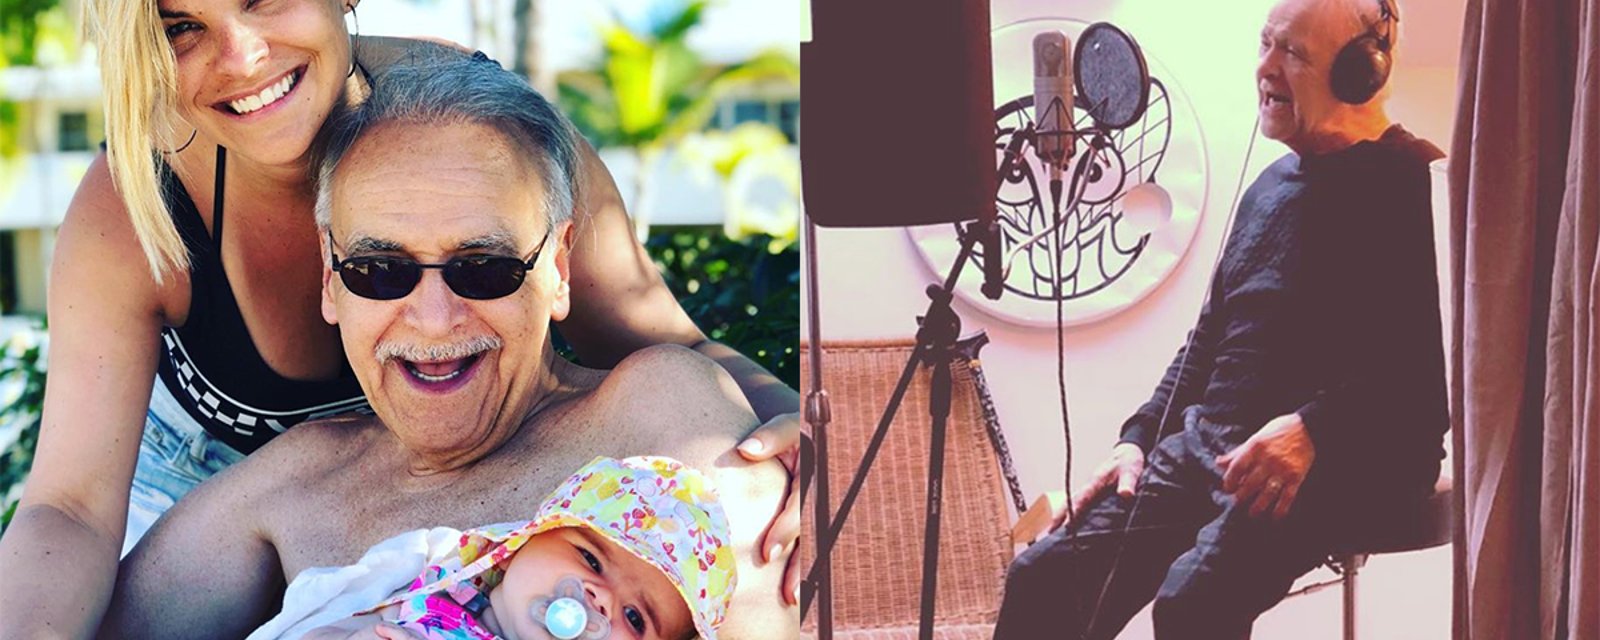 Patrick Zabé, le père de Kim Rusk, enregistre une chanson pour sa petite fille